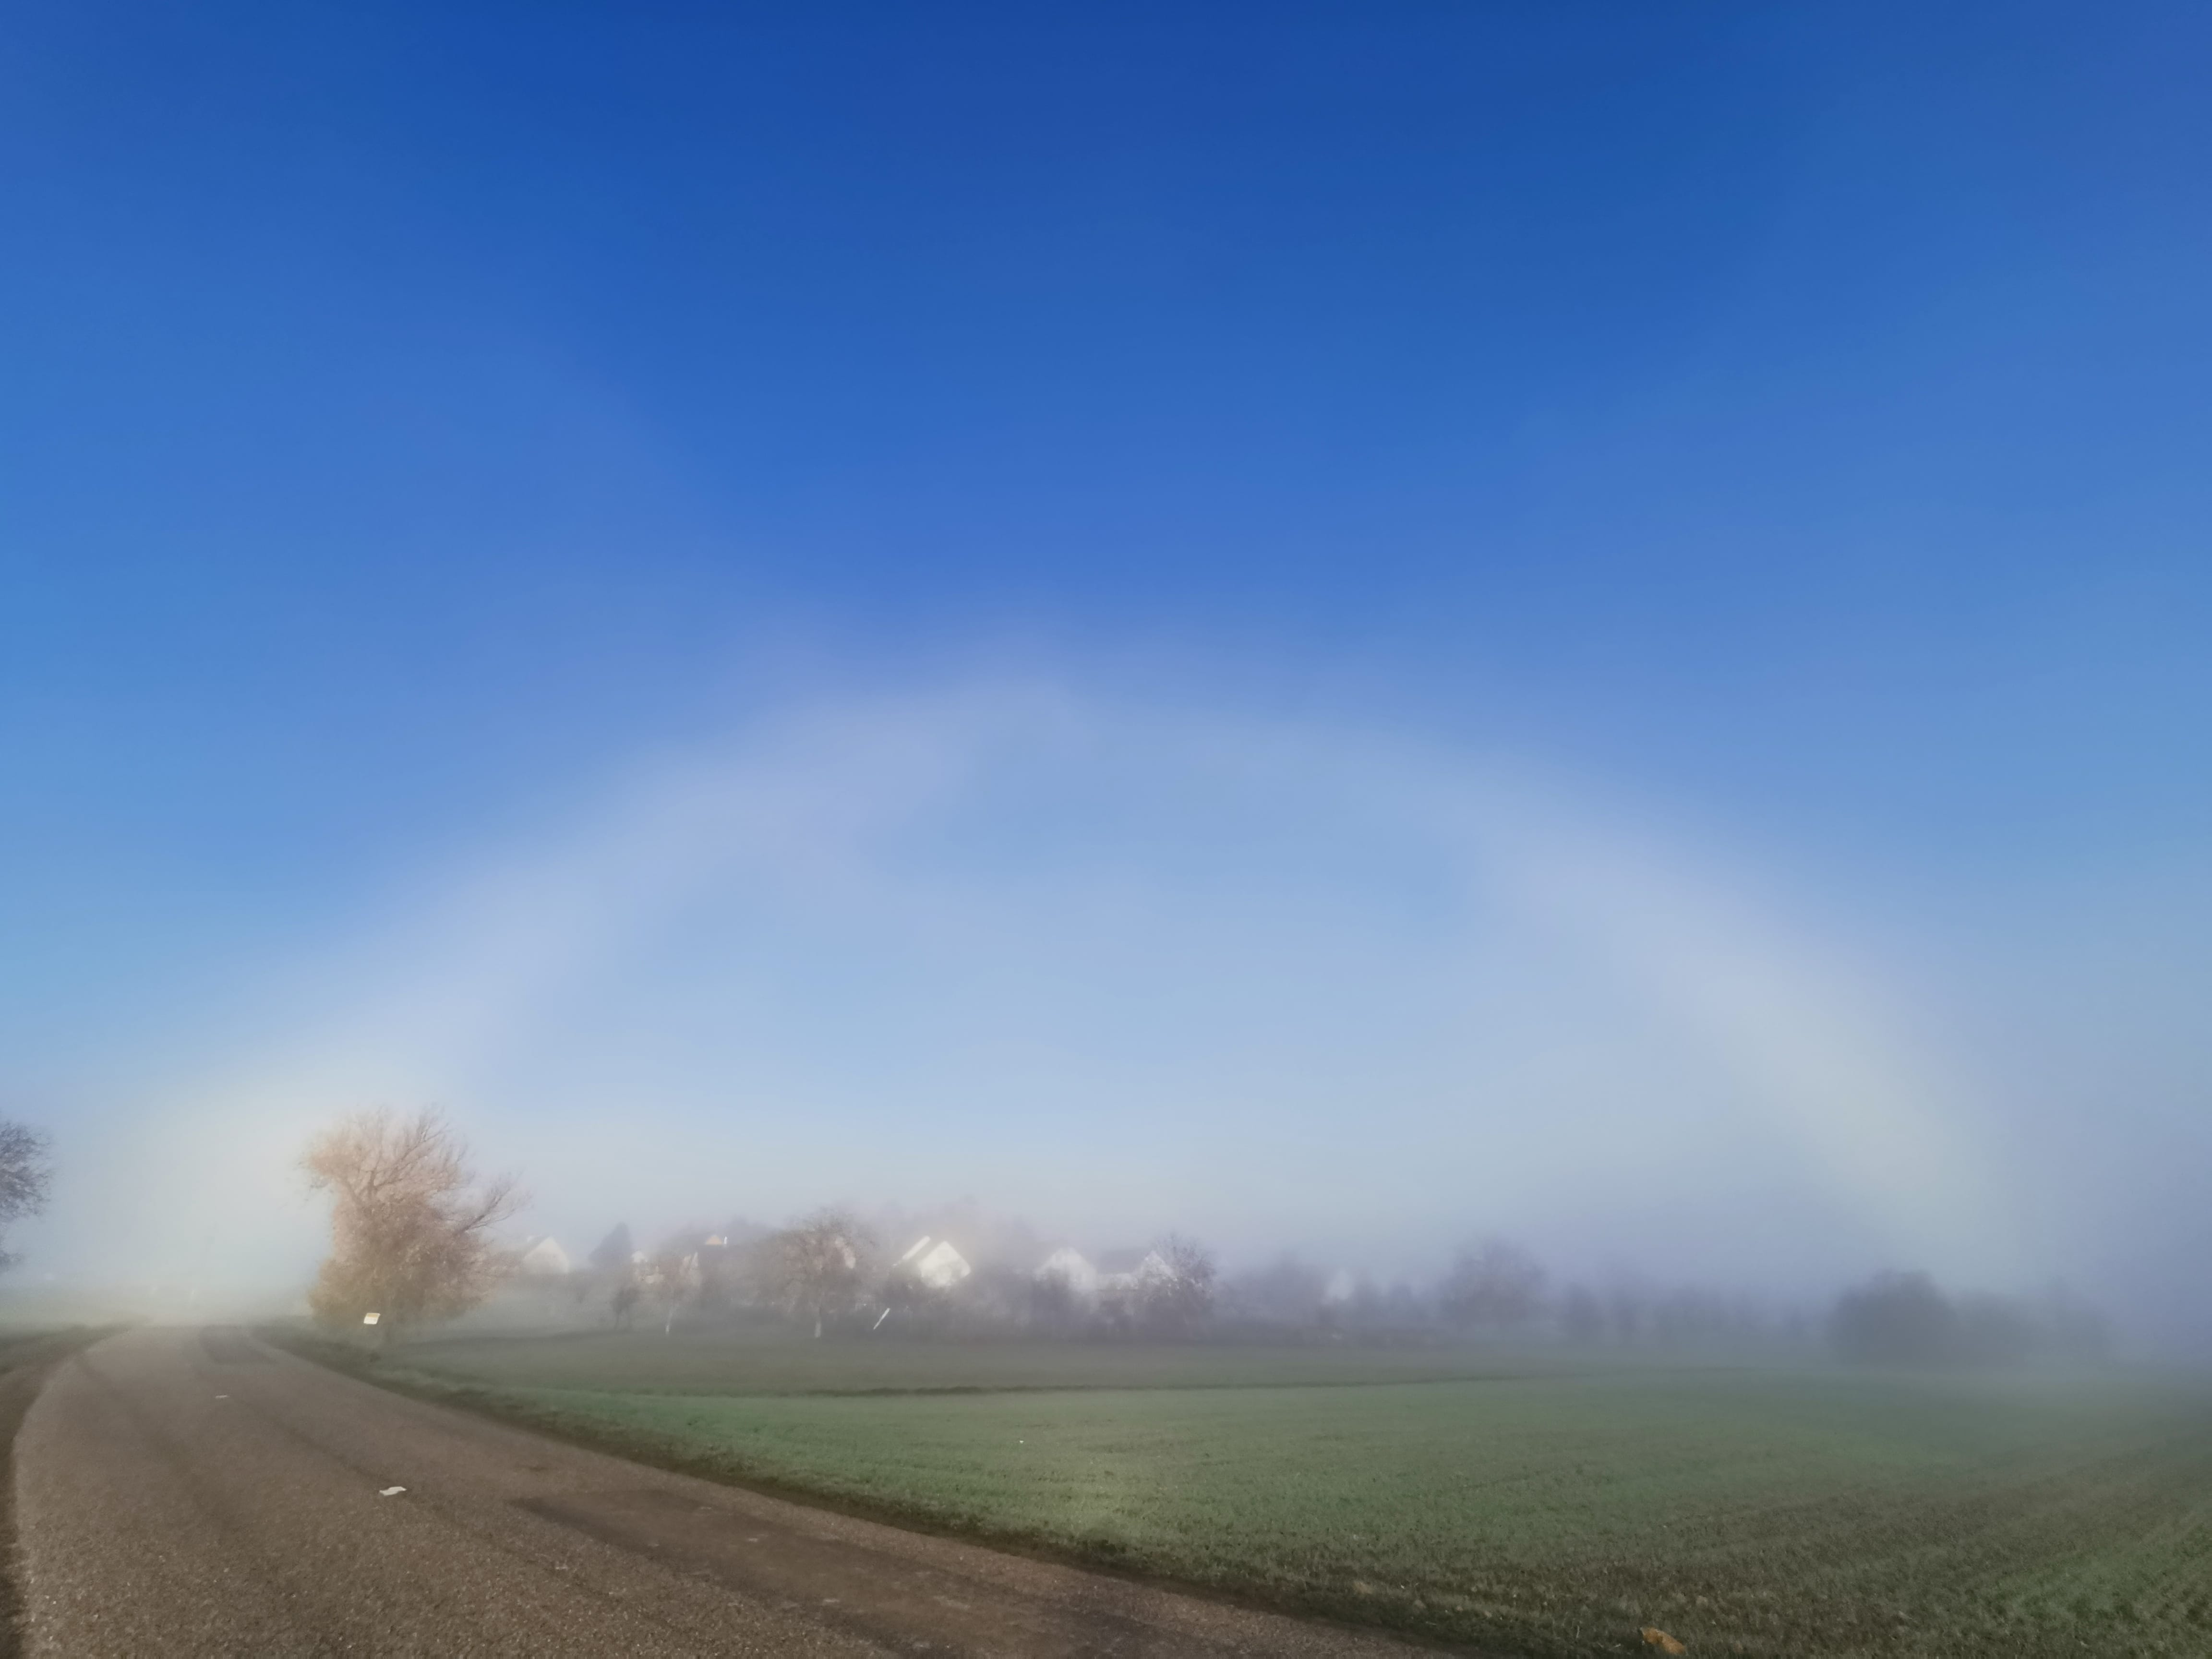 Apparition d'un fogbow (Arc blanc) dans la brume présente du côté de Dimbsthal (Sommerau, Alsace, Bas-Rhin) ce matin !! - 18/11/2020 08:54 - Sabine Lutz